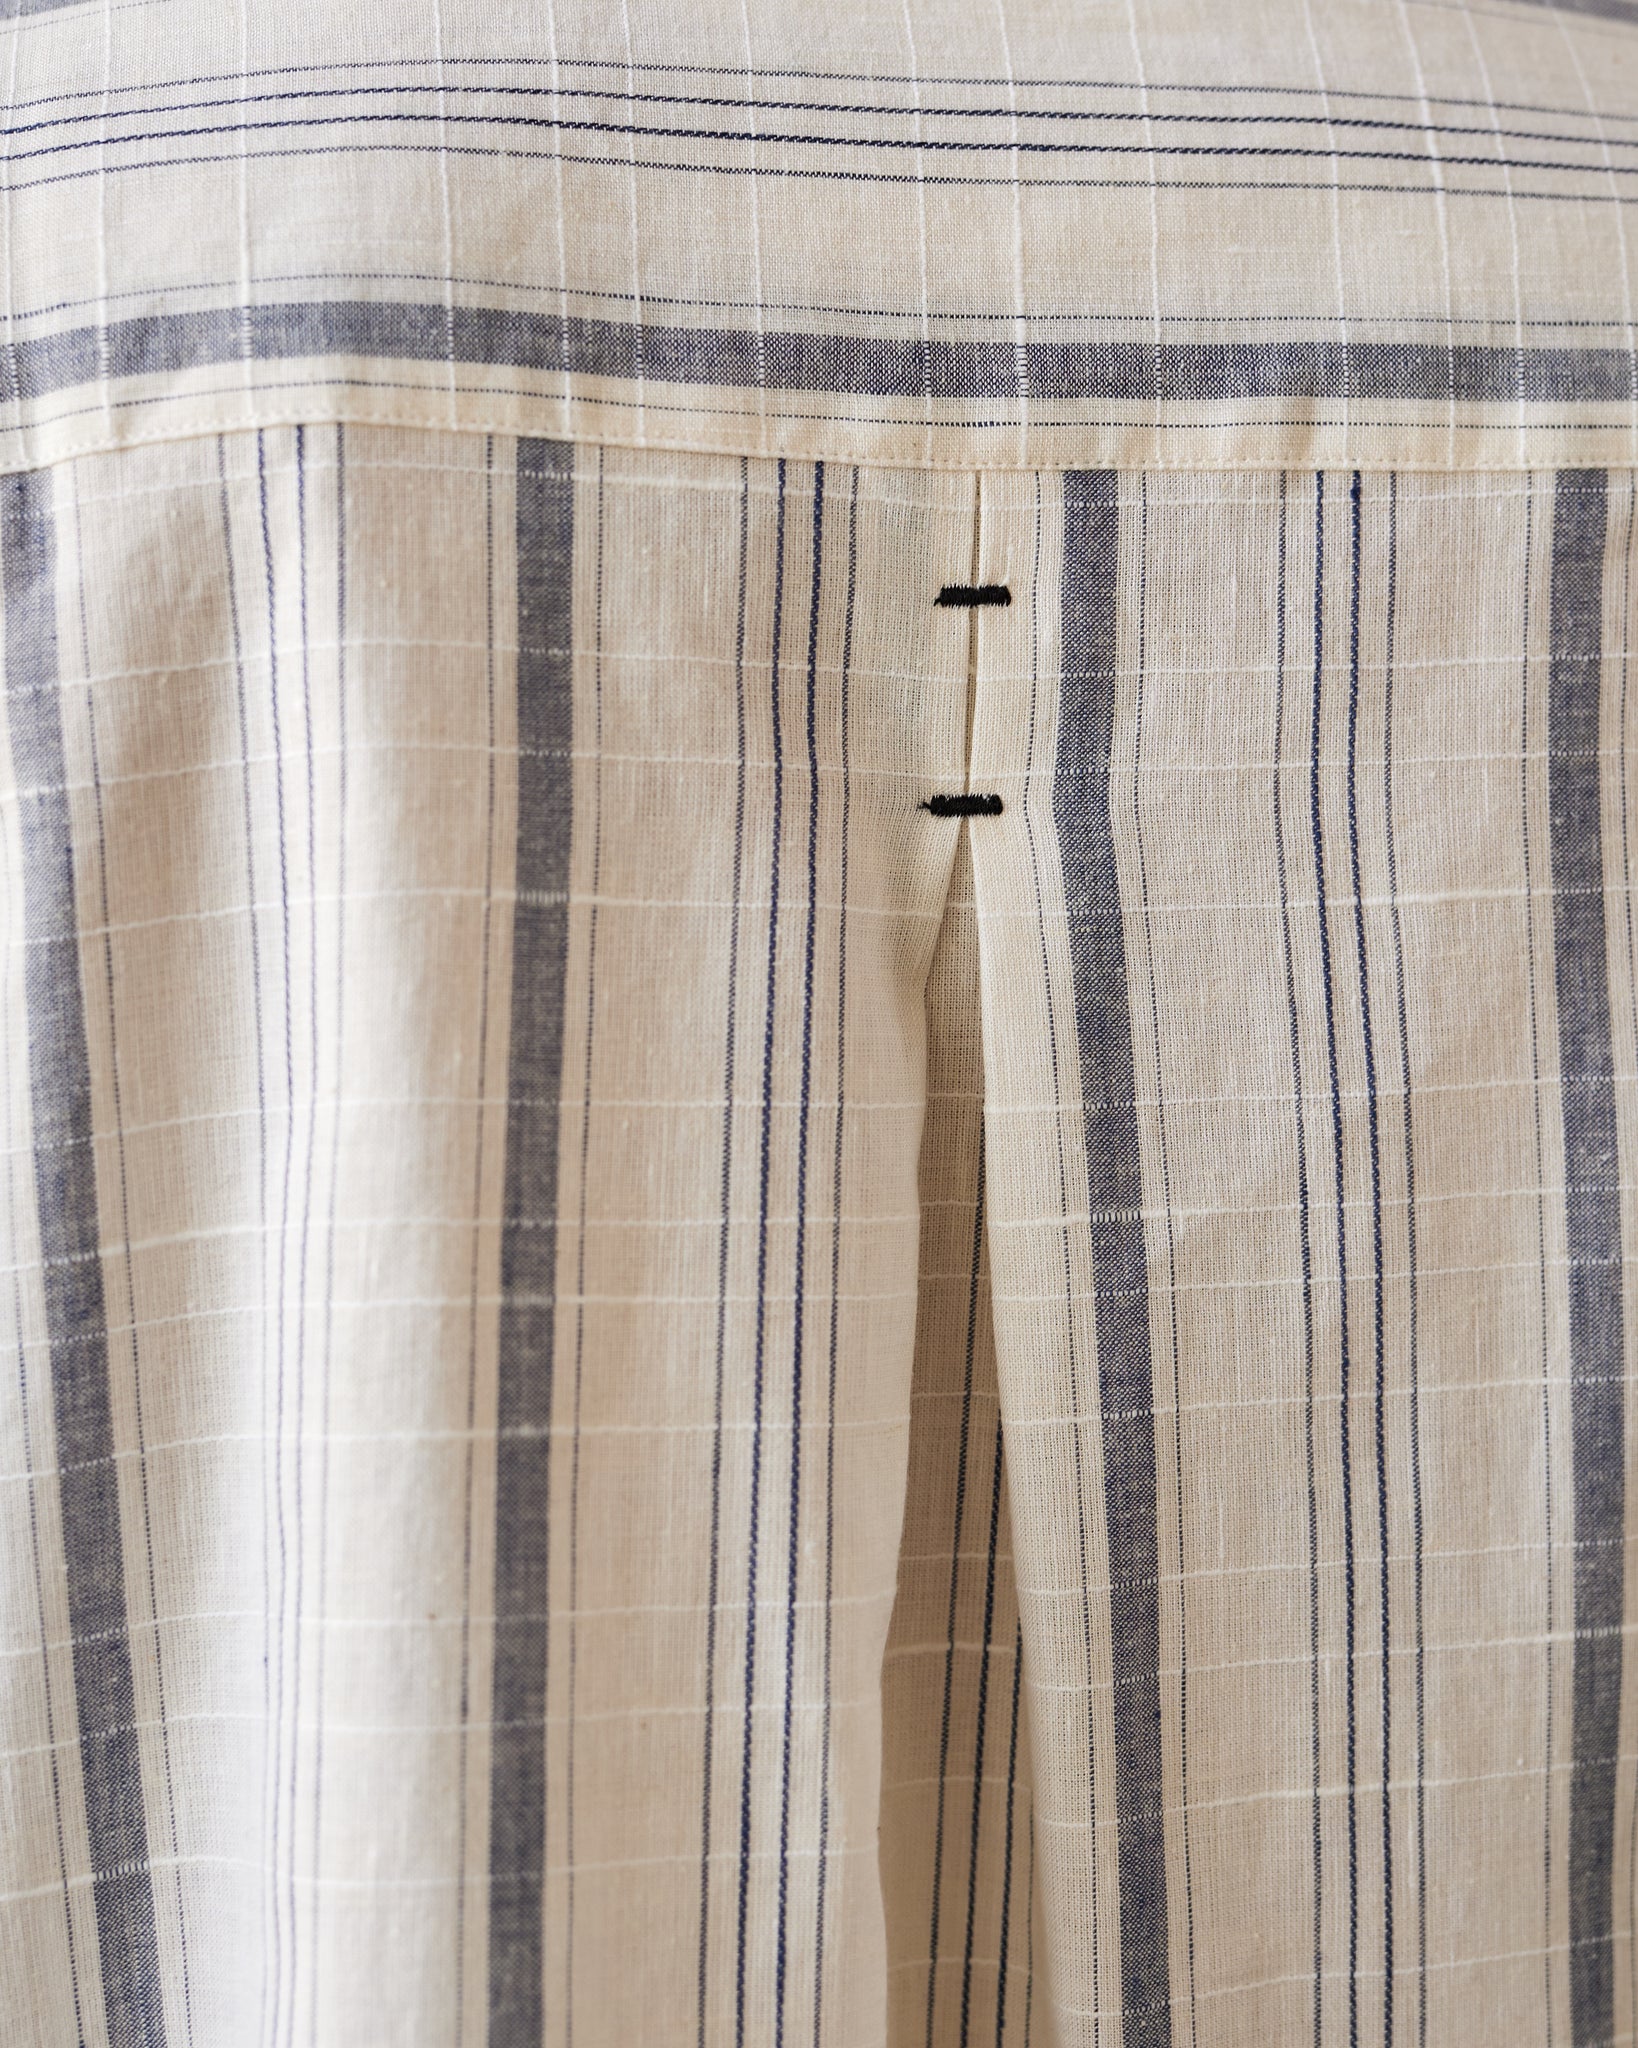 Cordera Striped Checkered Shirt, Indigo